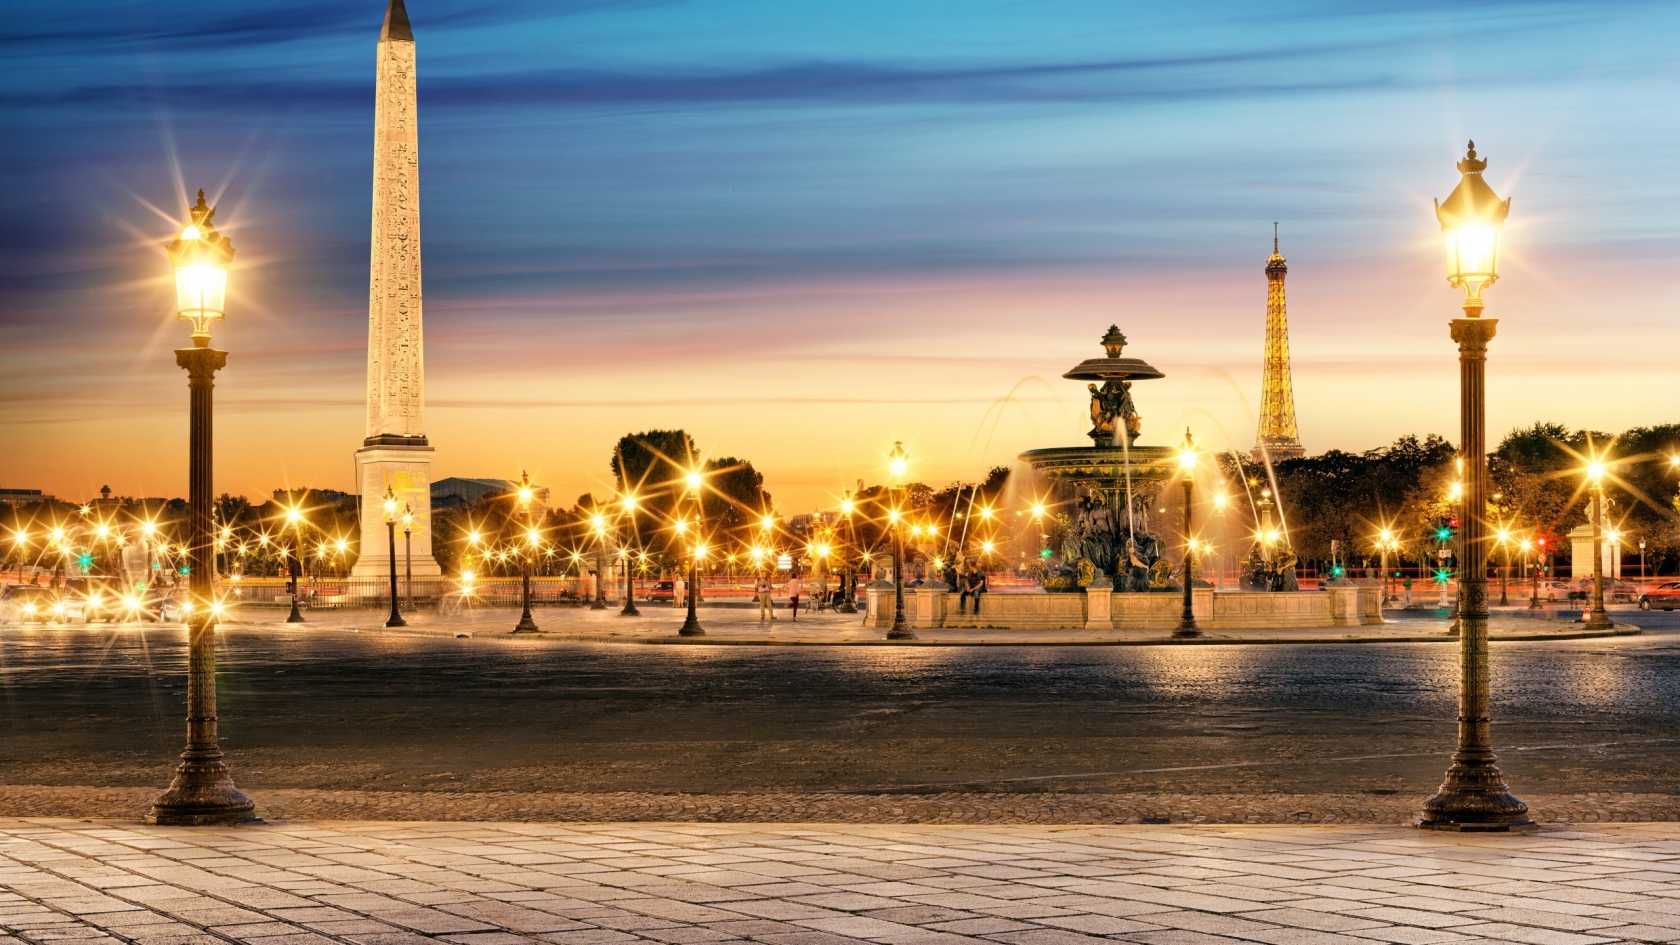 The Luxor Obelisk Paris for 1680 x 945 HDTV resolution